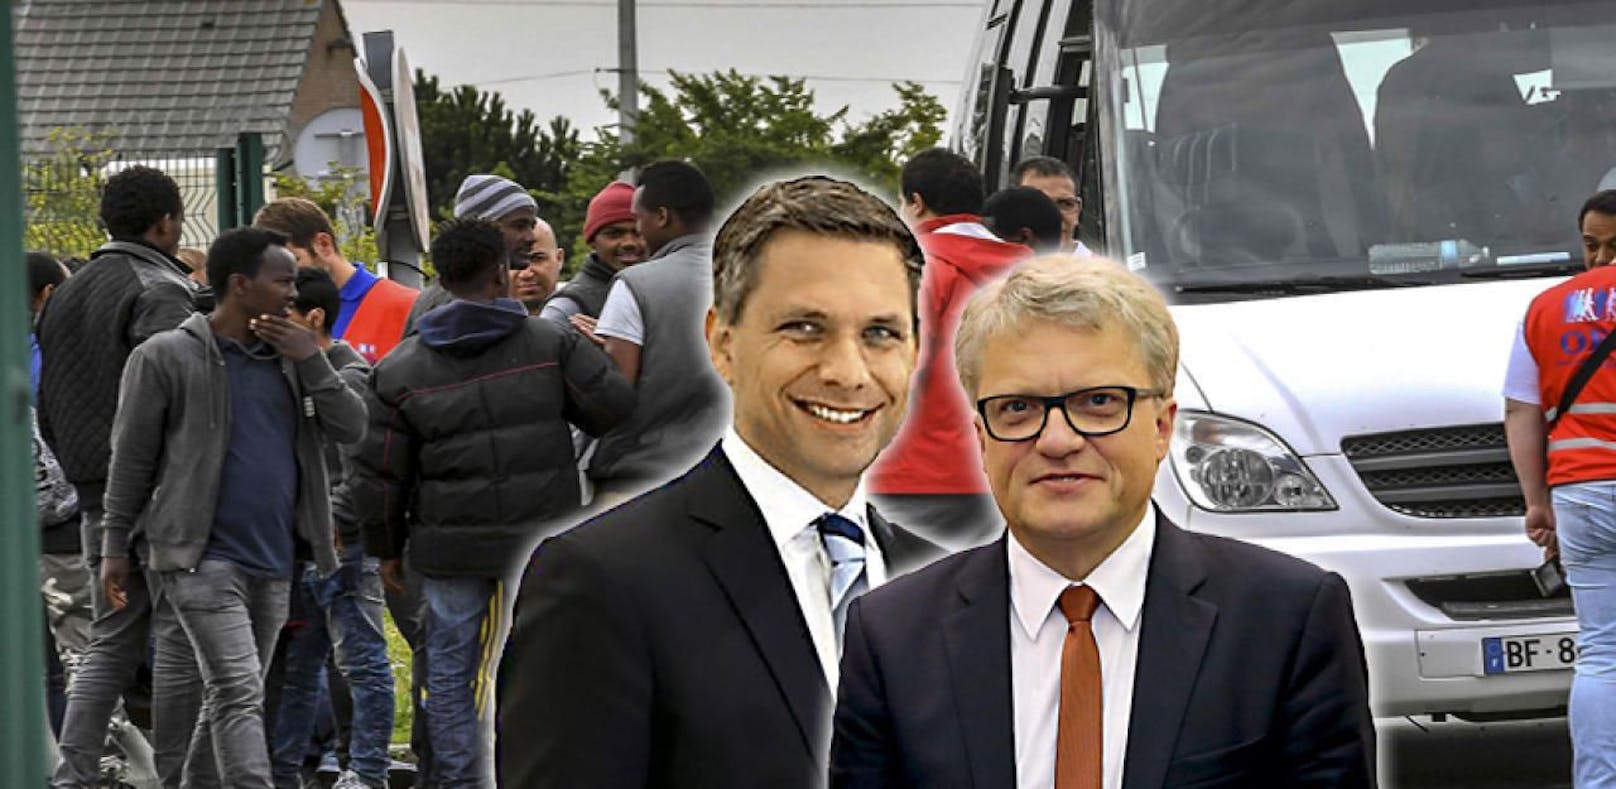 Wolfgang Hattmannsdorfer (ÖVP) will Klaus Luger (SPÖ) in eine Allianz mit der FPÖ holen, um eine Reform der Mindestsicherung durchzusetzen.